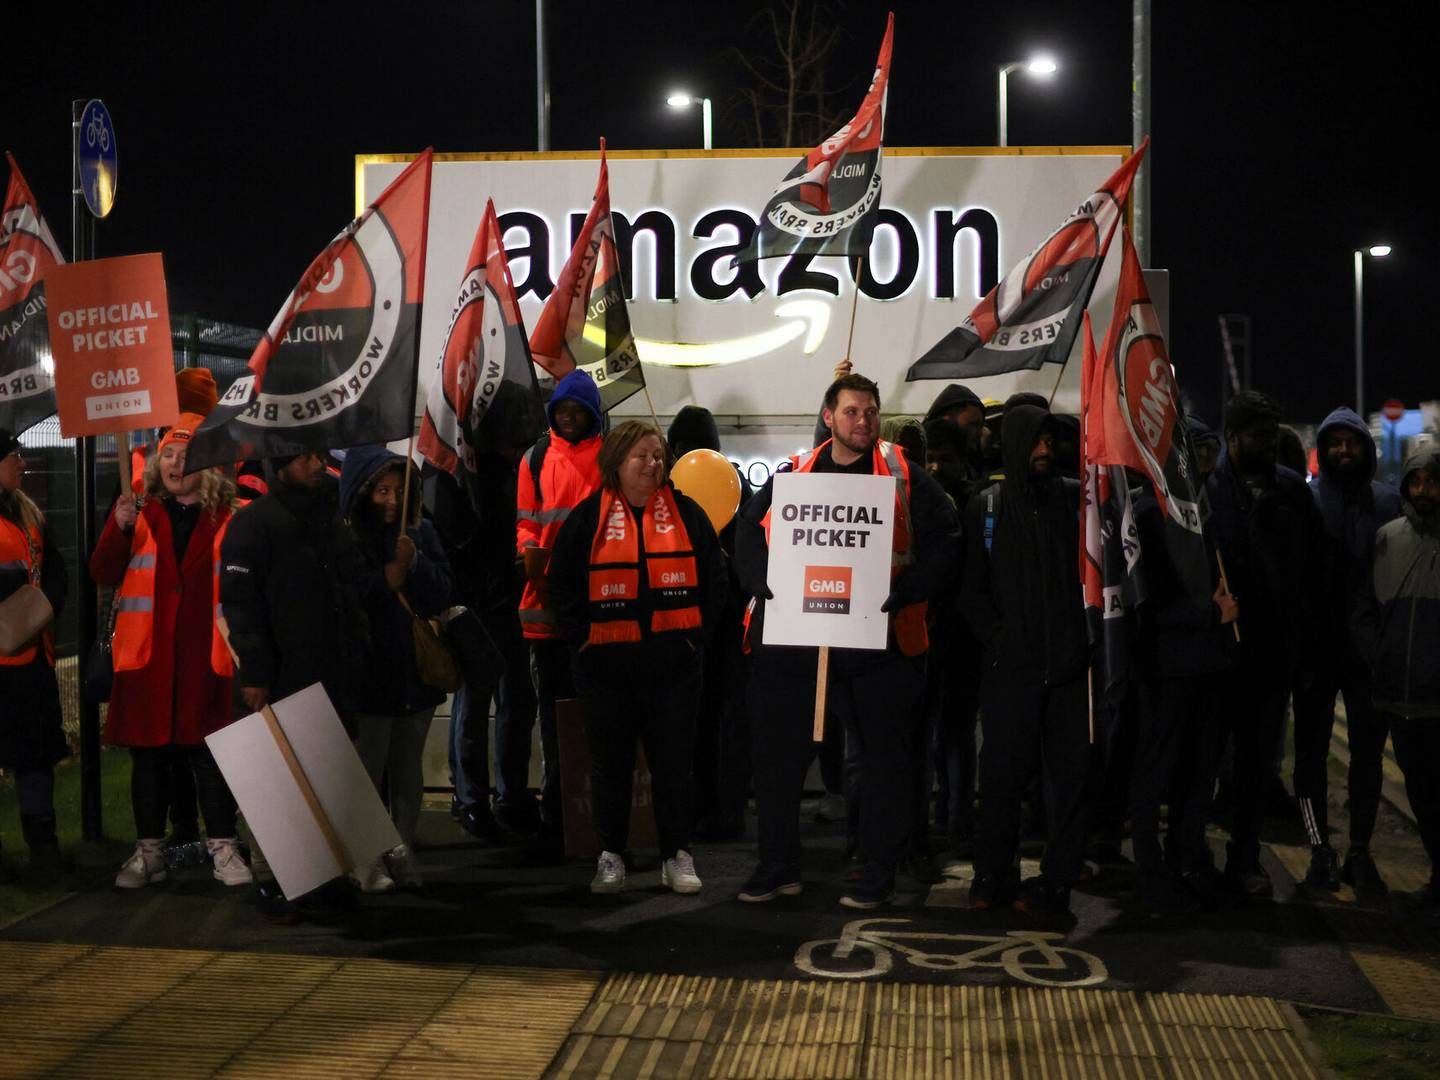 Amazon-medarbejdere strejker og demonstrerer flere steder i Europa for højere løn. | Foto: Phil Noble/reuters/ritzau Scanpix